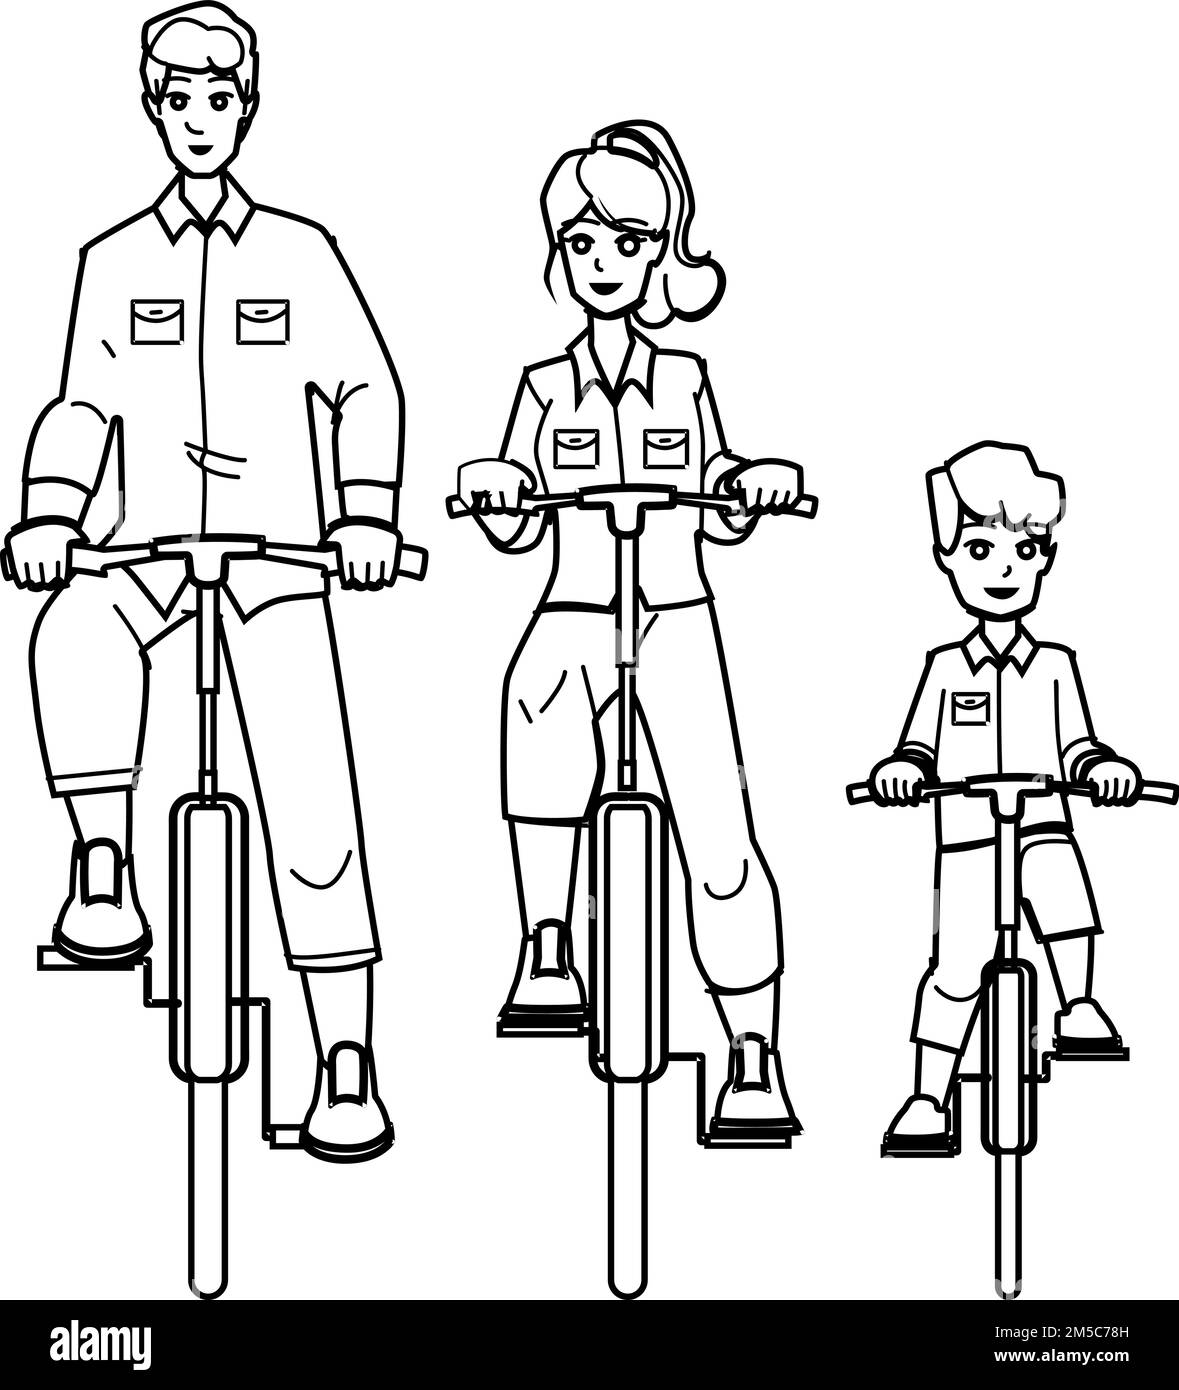 family riding bikes vector Stock Vector